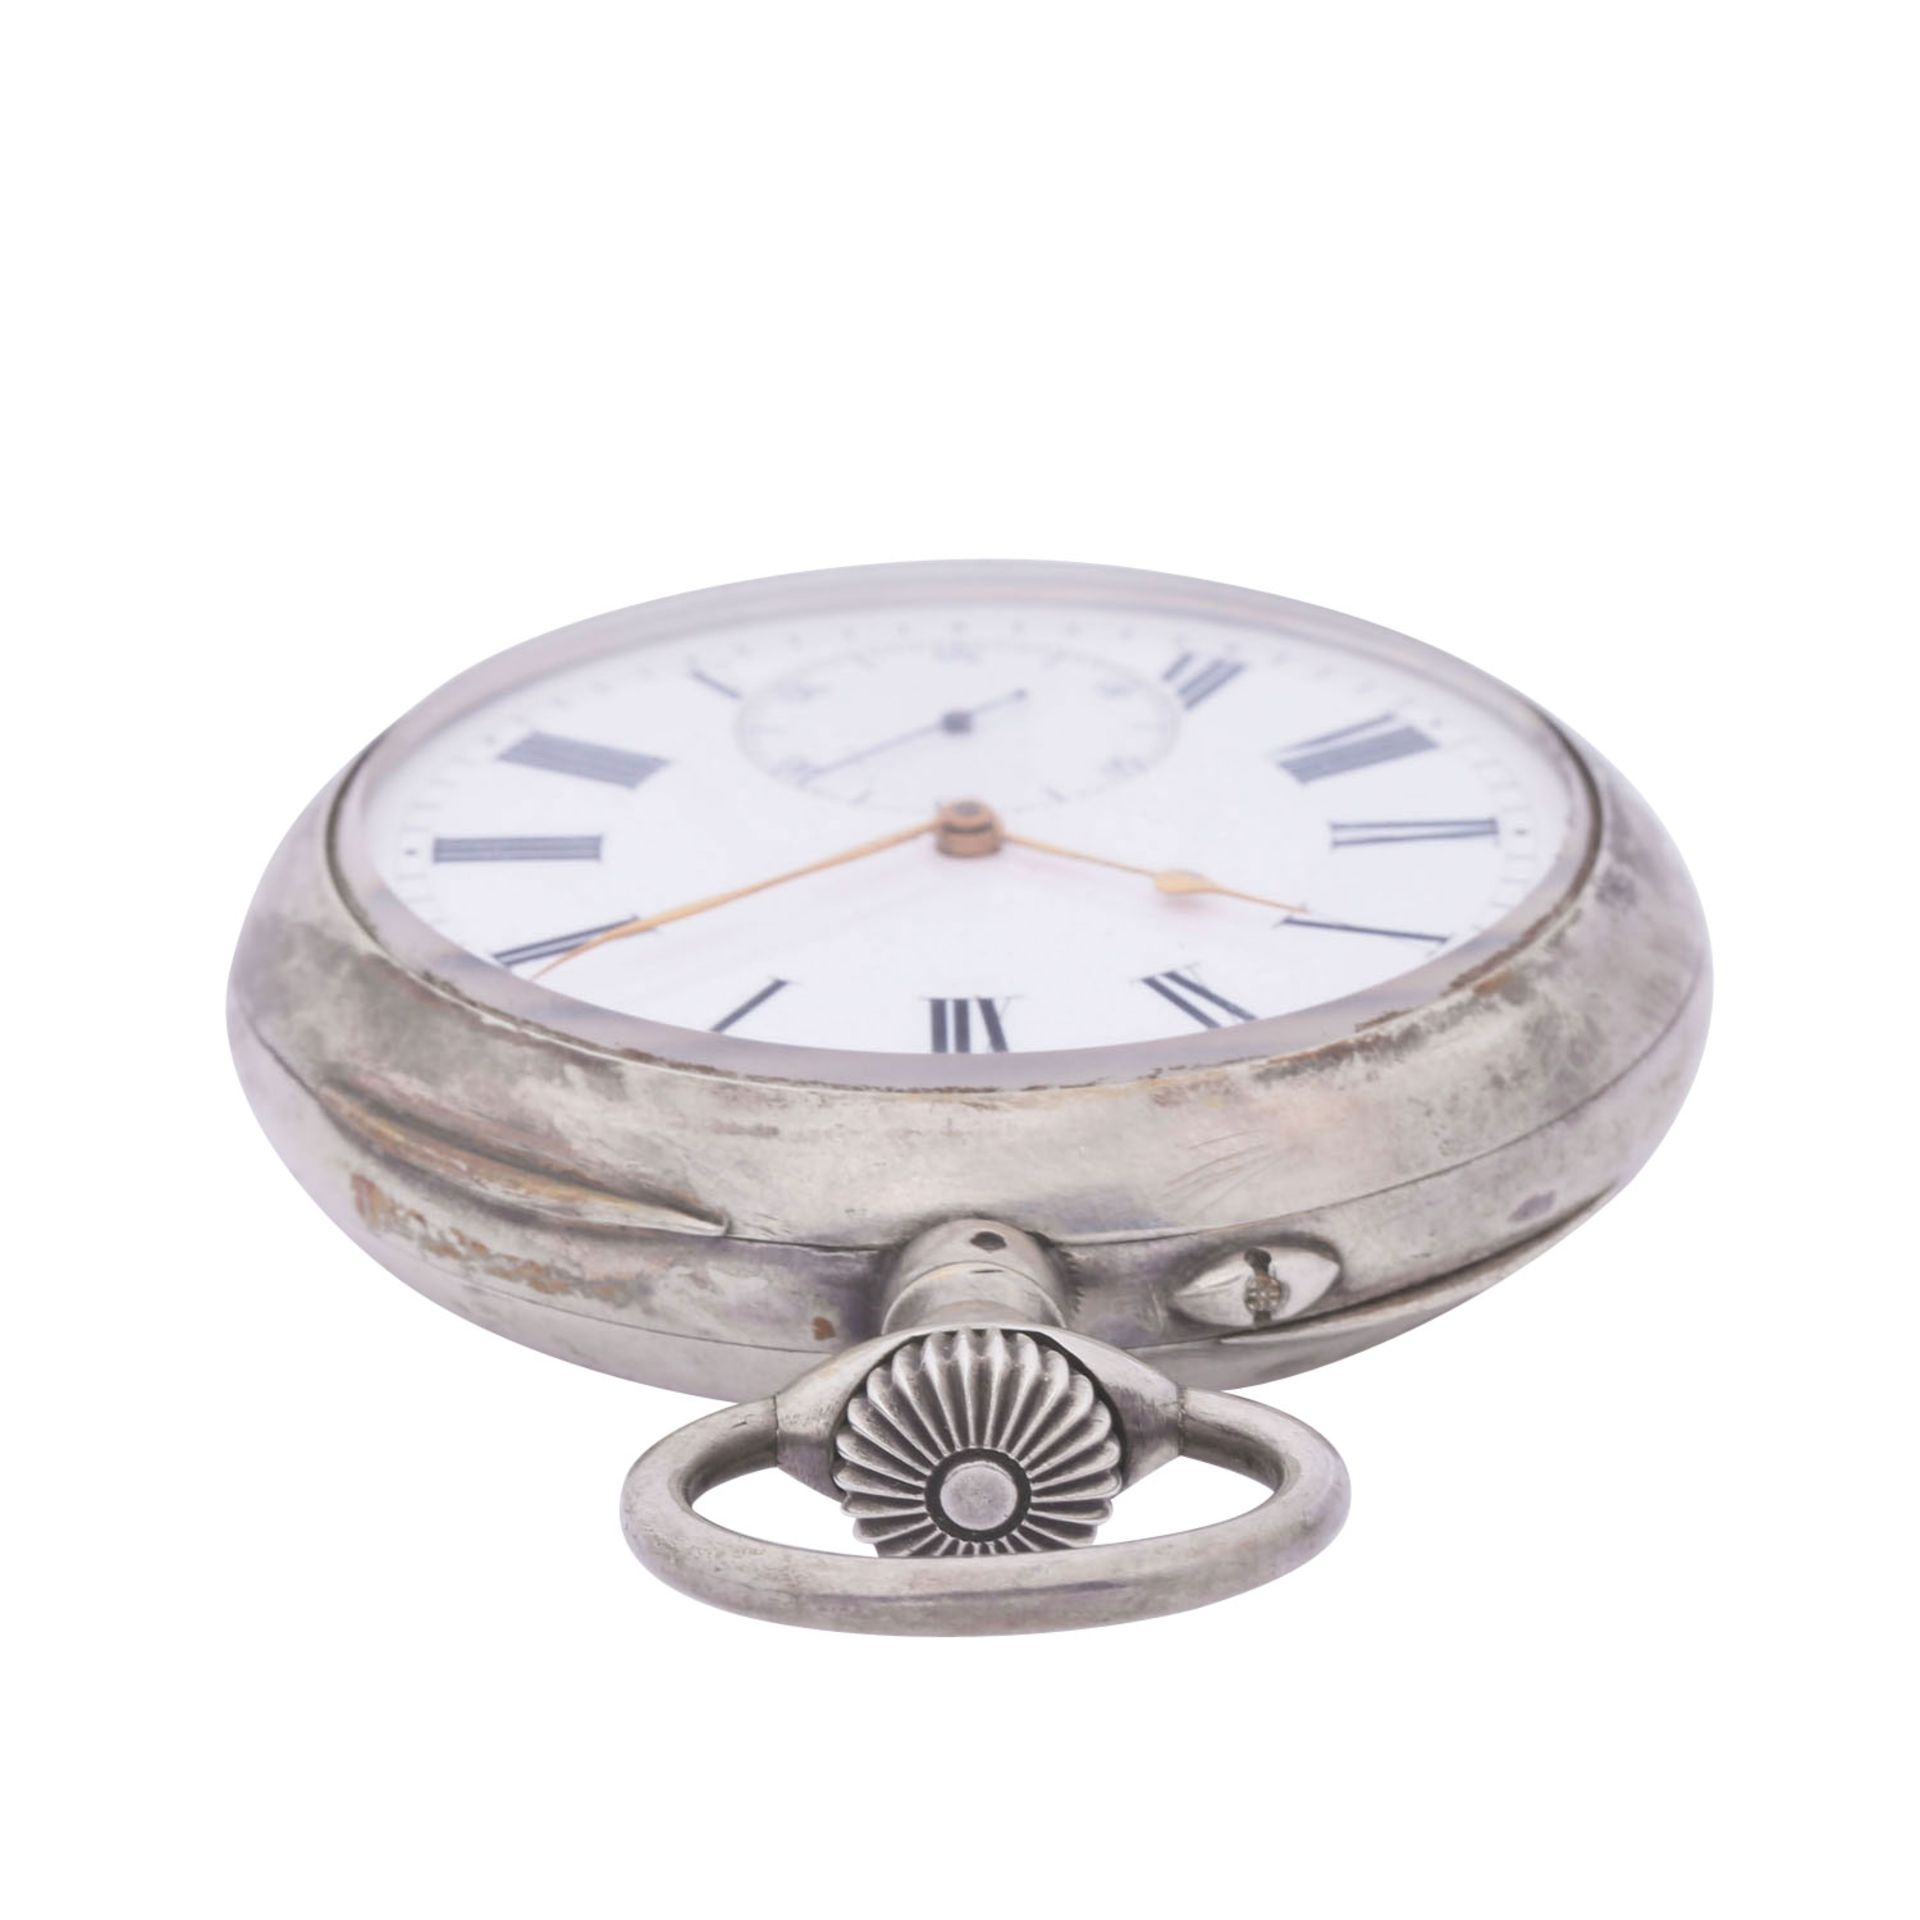 L. LEROY & Cie. Paris sehr seltener, großer und schwerer Taschenuhr Chronometer. Frankreich. - Bild 8 aus 12